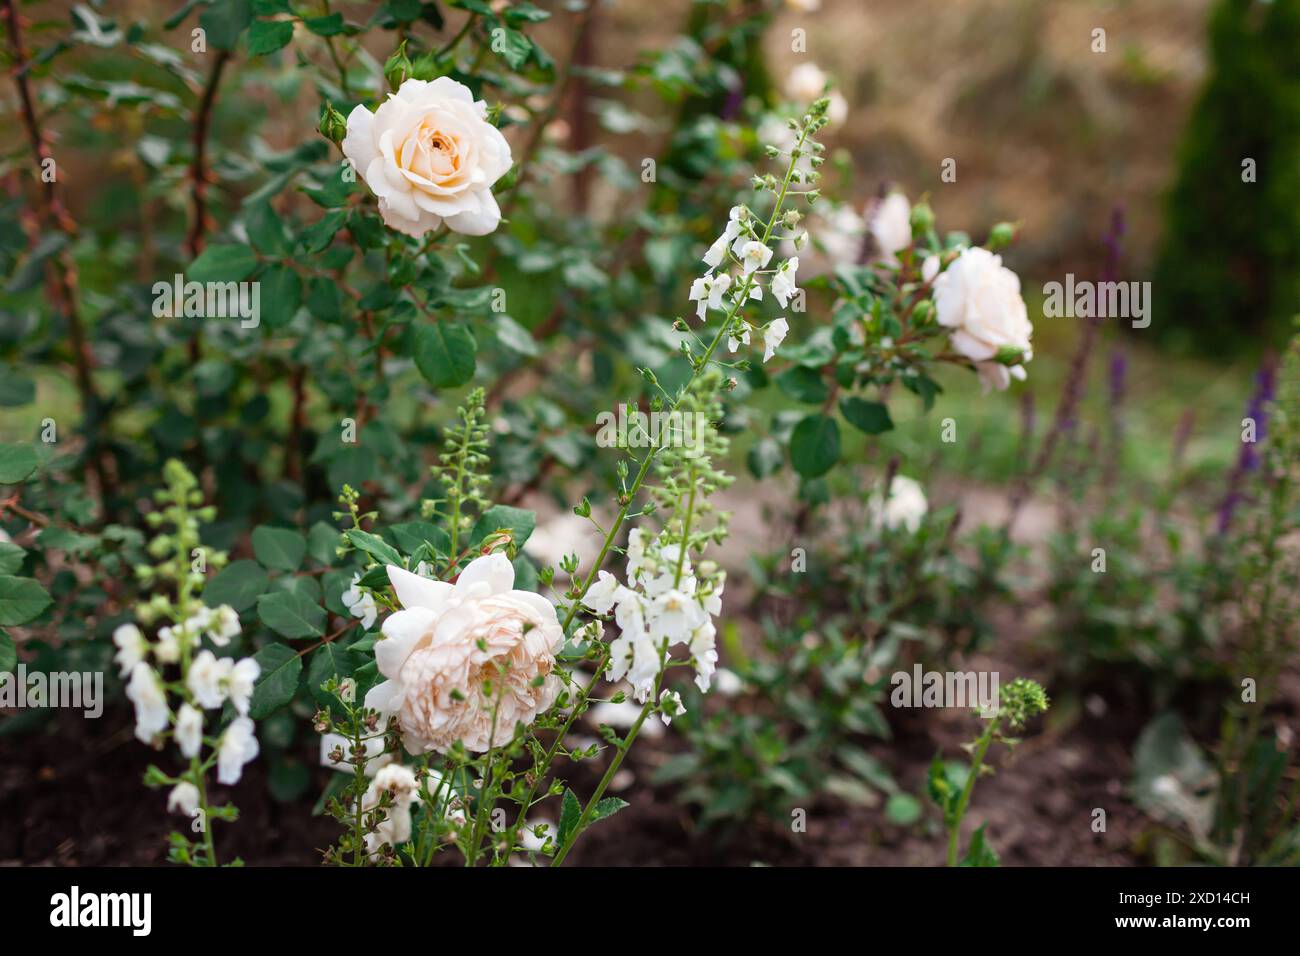 Englische Krokusrose blüht im Sommergarten von verbascum phoeniceum. Weiße cremige Blüten wachsen auf Sträuchern. Austin-Auswahl Stockfoto